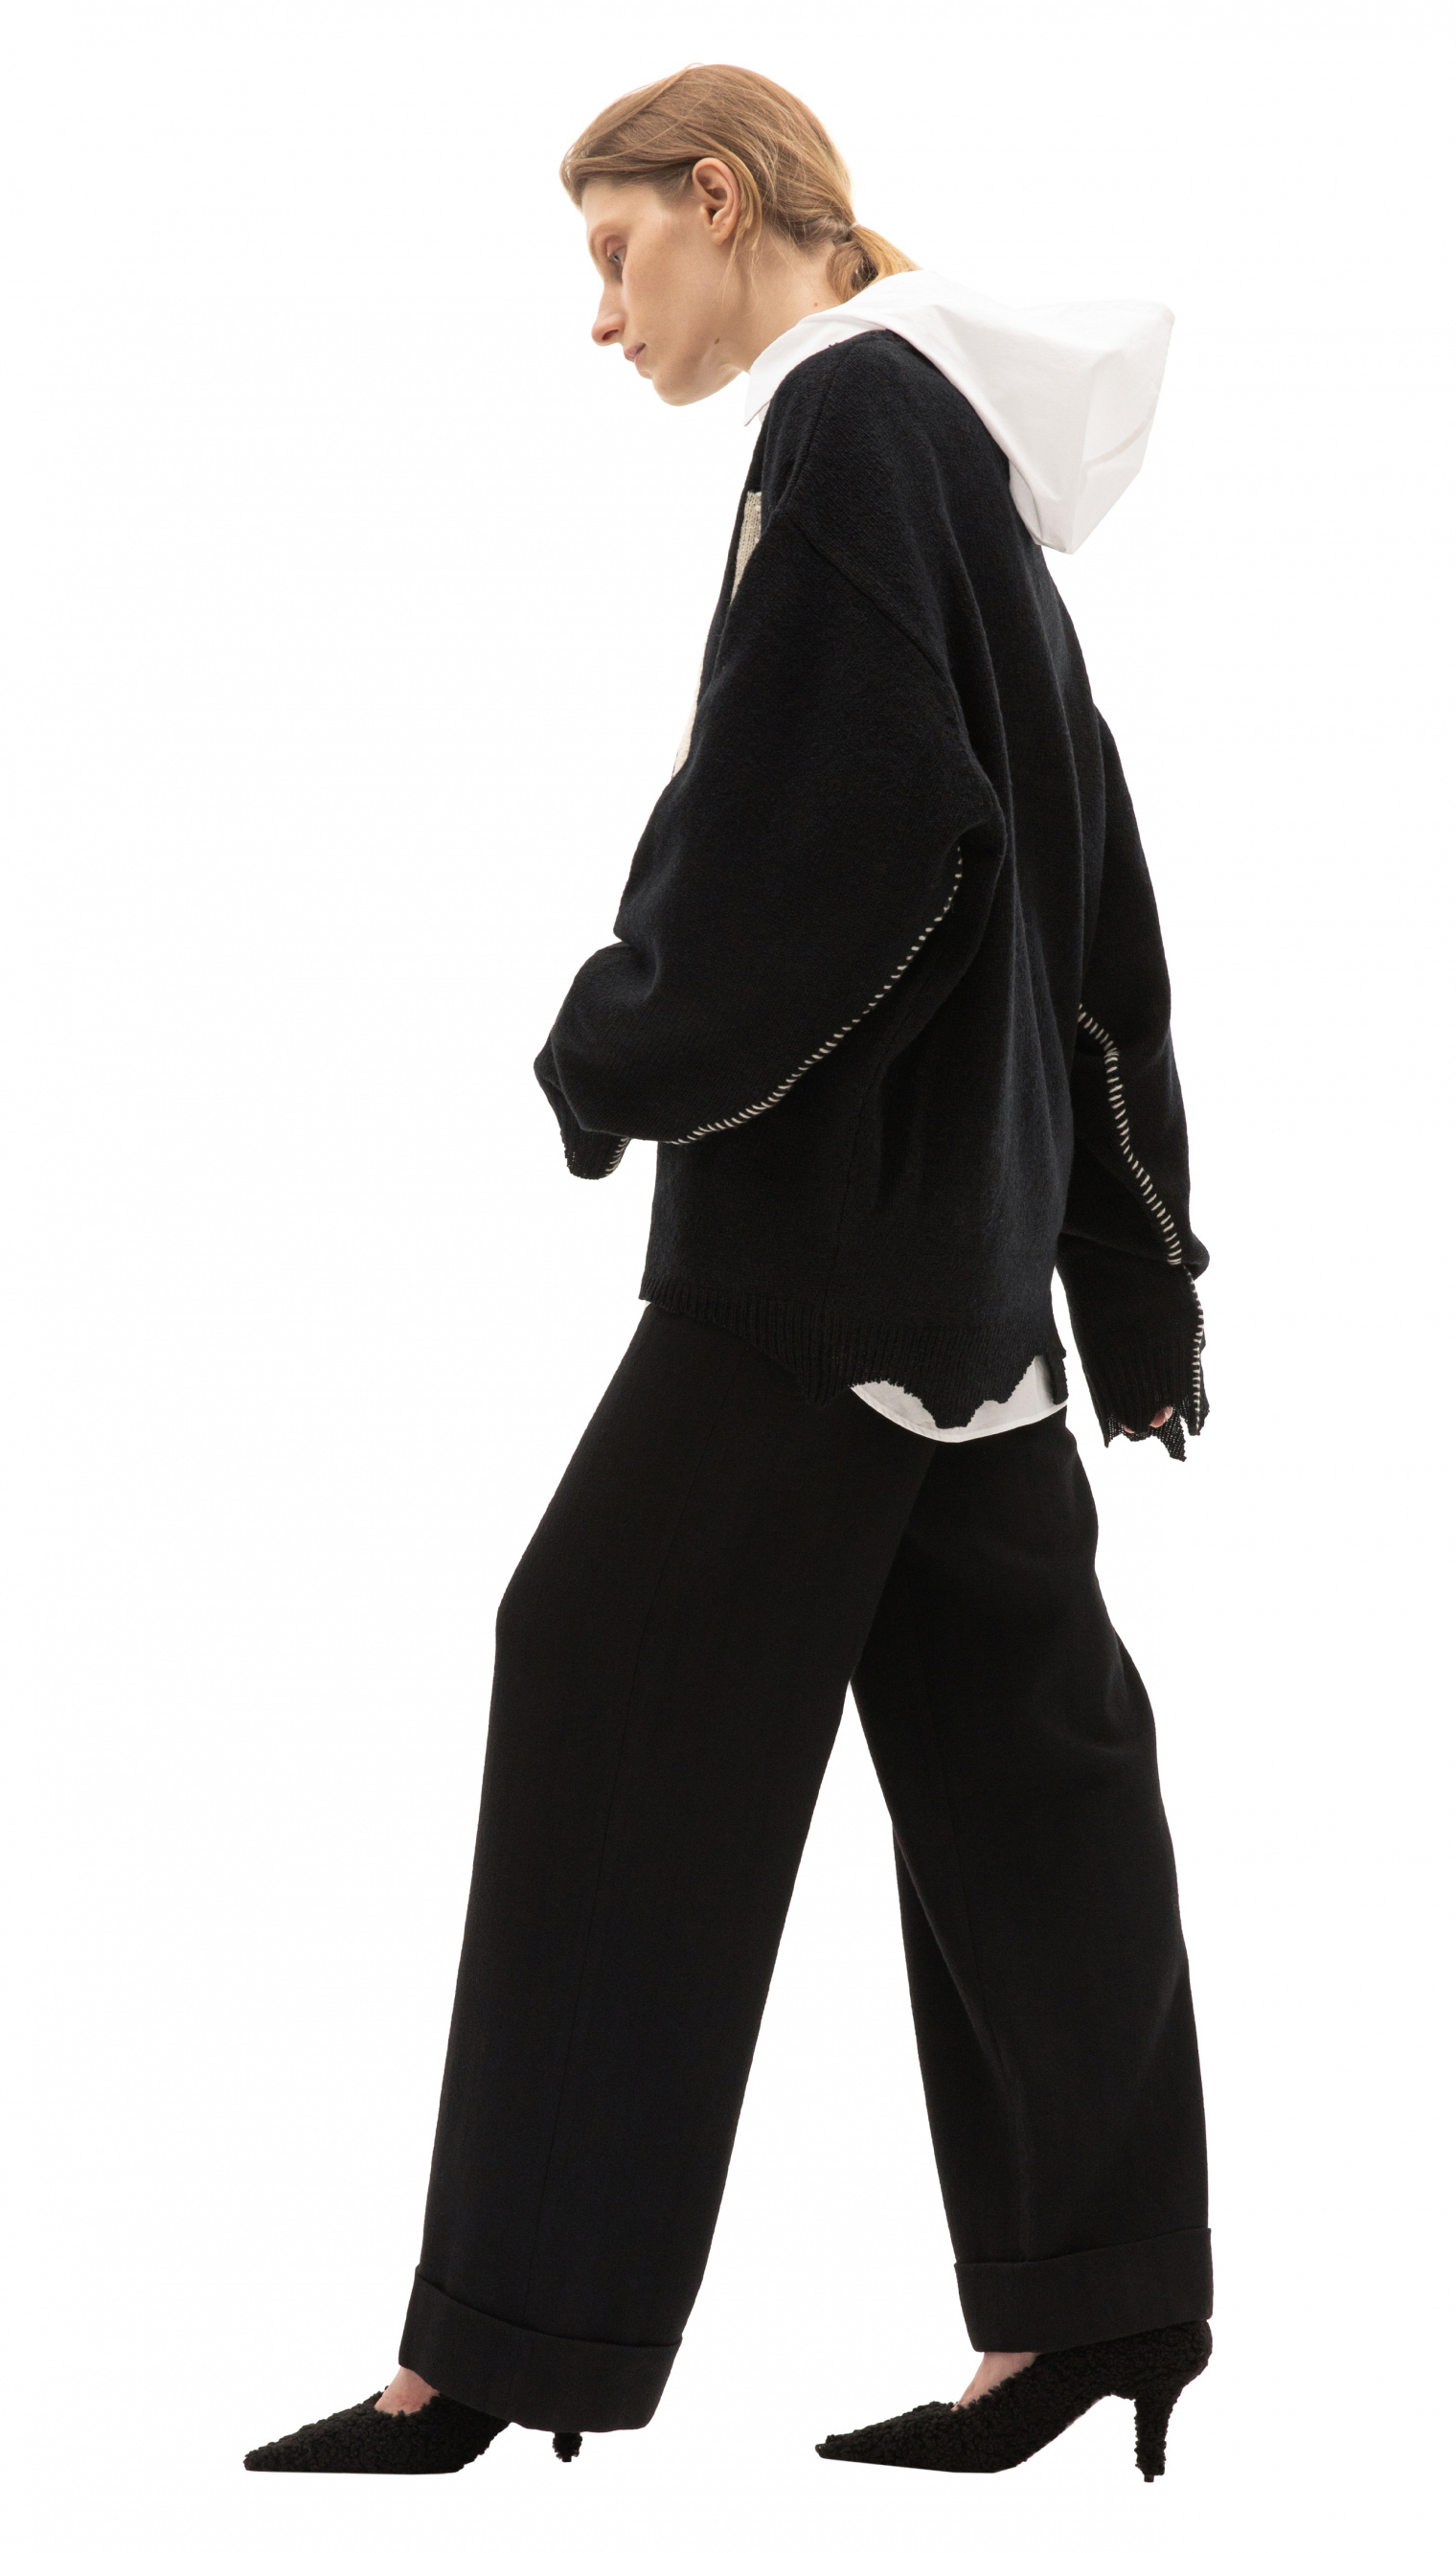 Buy Saint Michael women sin wool sweater in black for $810 online on SV77,  SM-A21-0000-039